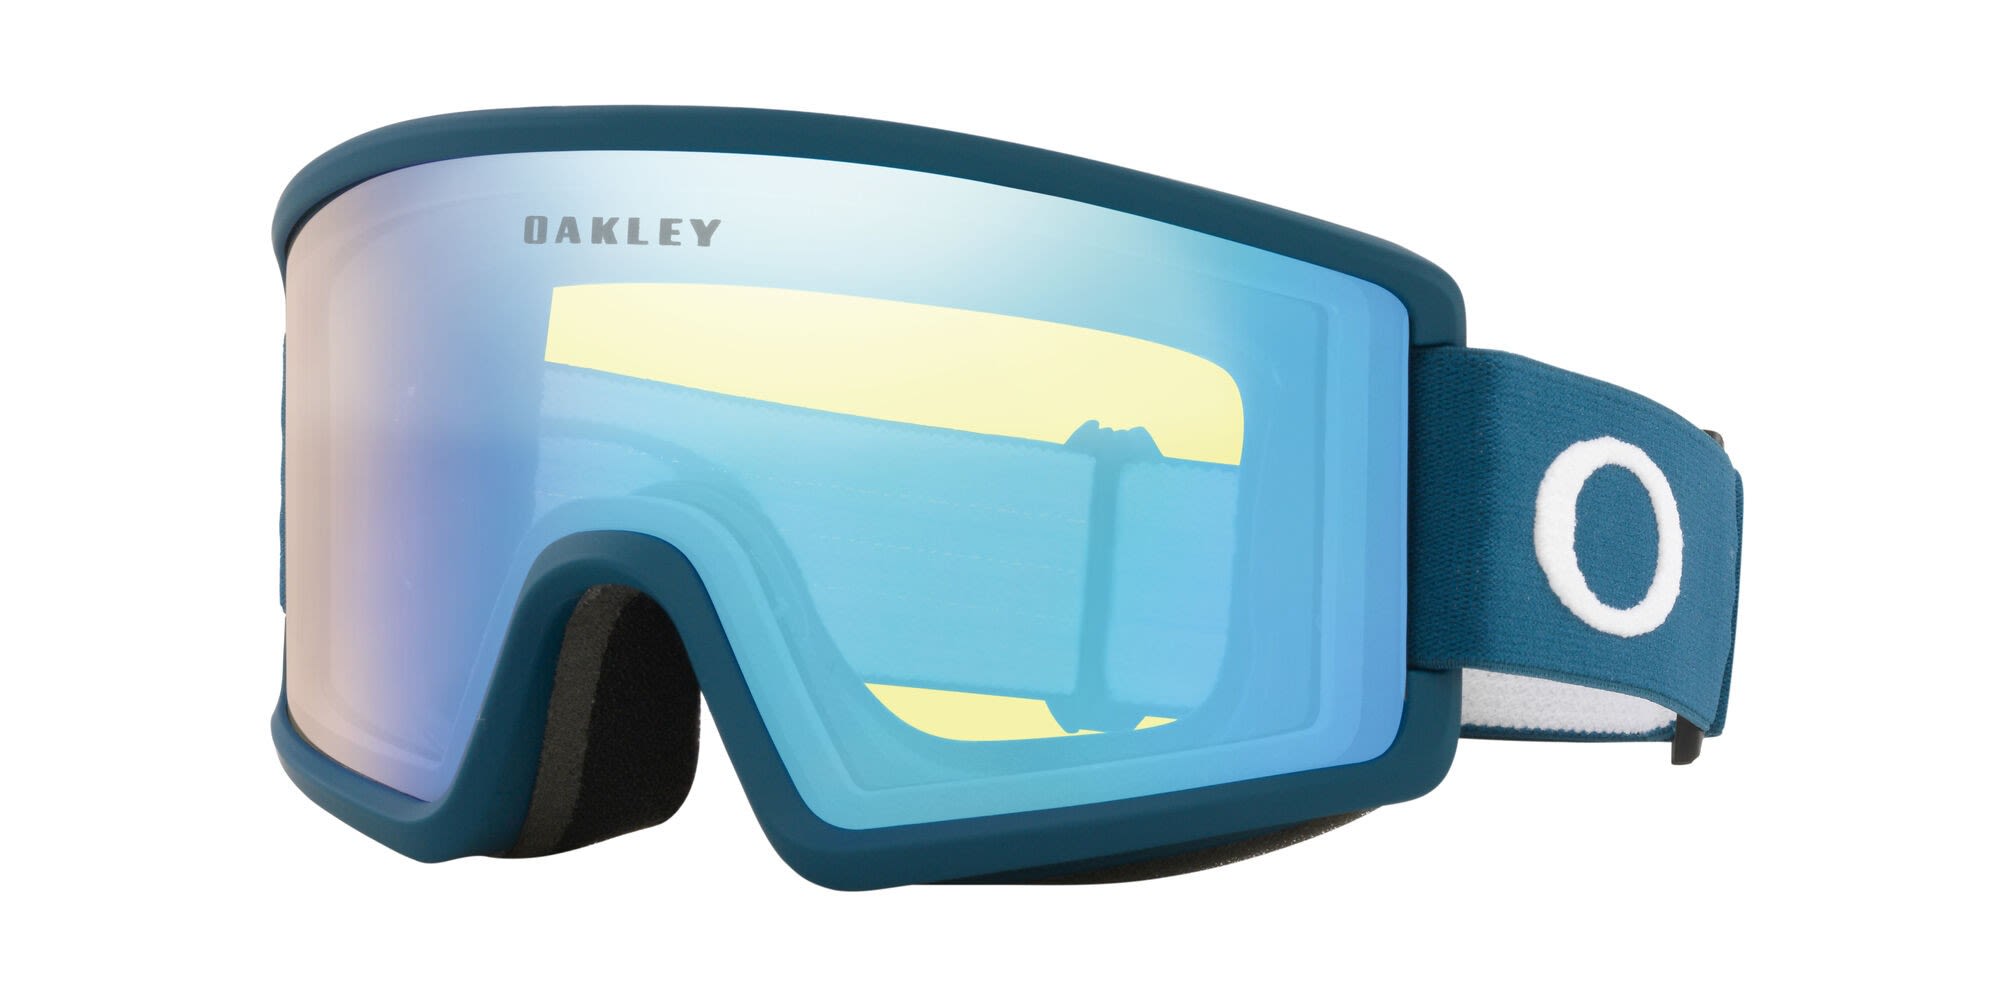 Oakley Target Line II Blau- Skibrillen- Grsse One Size - Farbe Poseidon - Hi Yellow